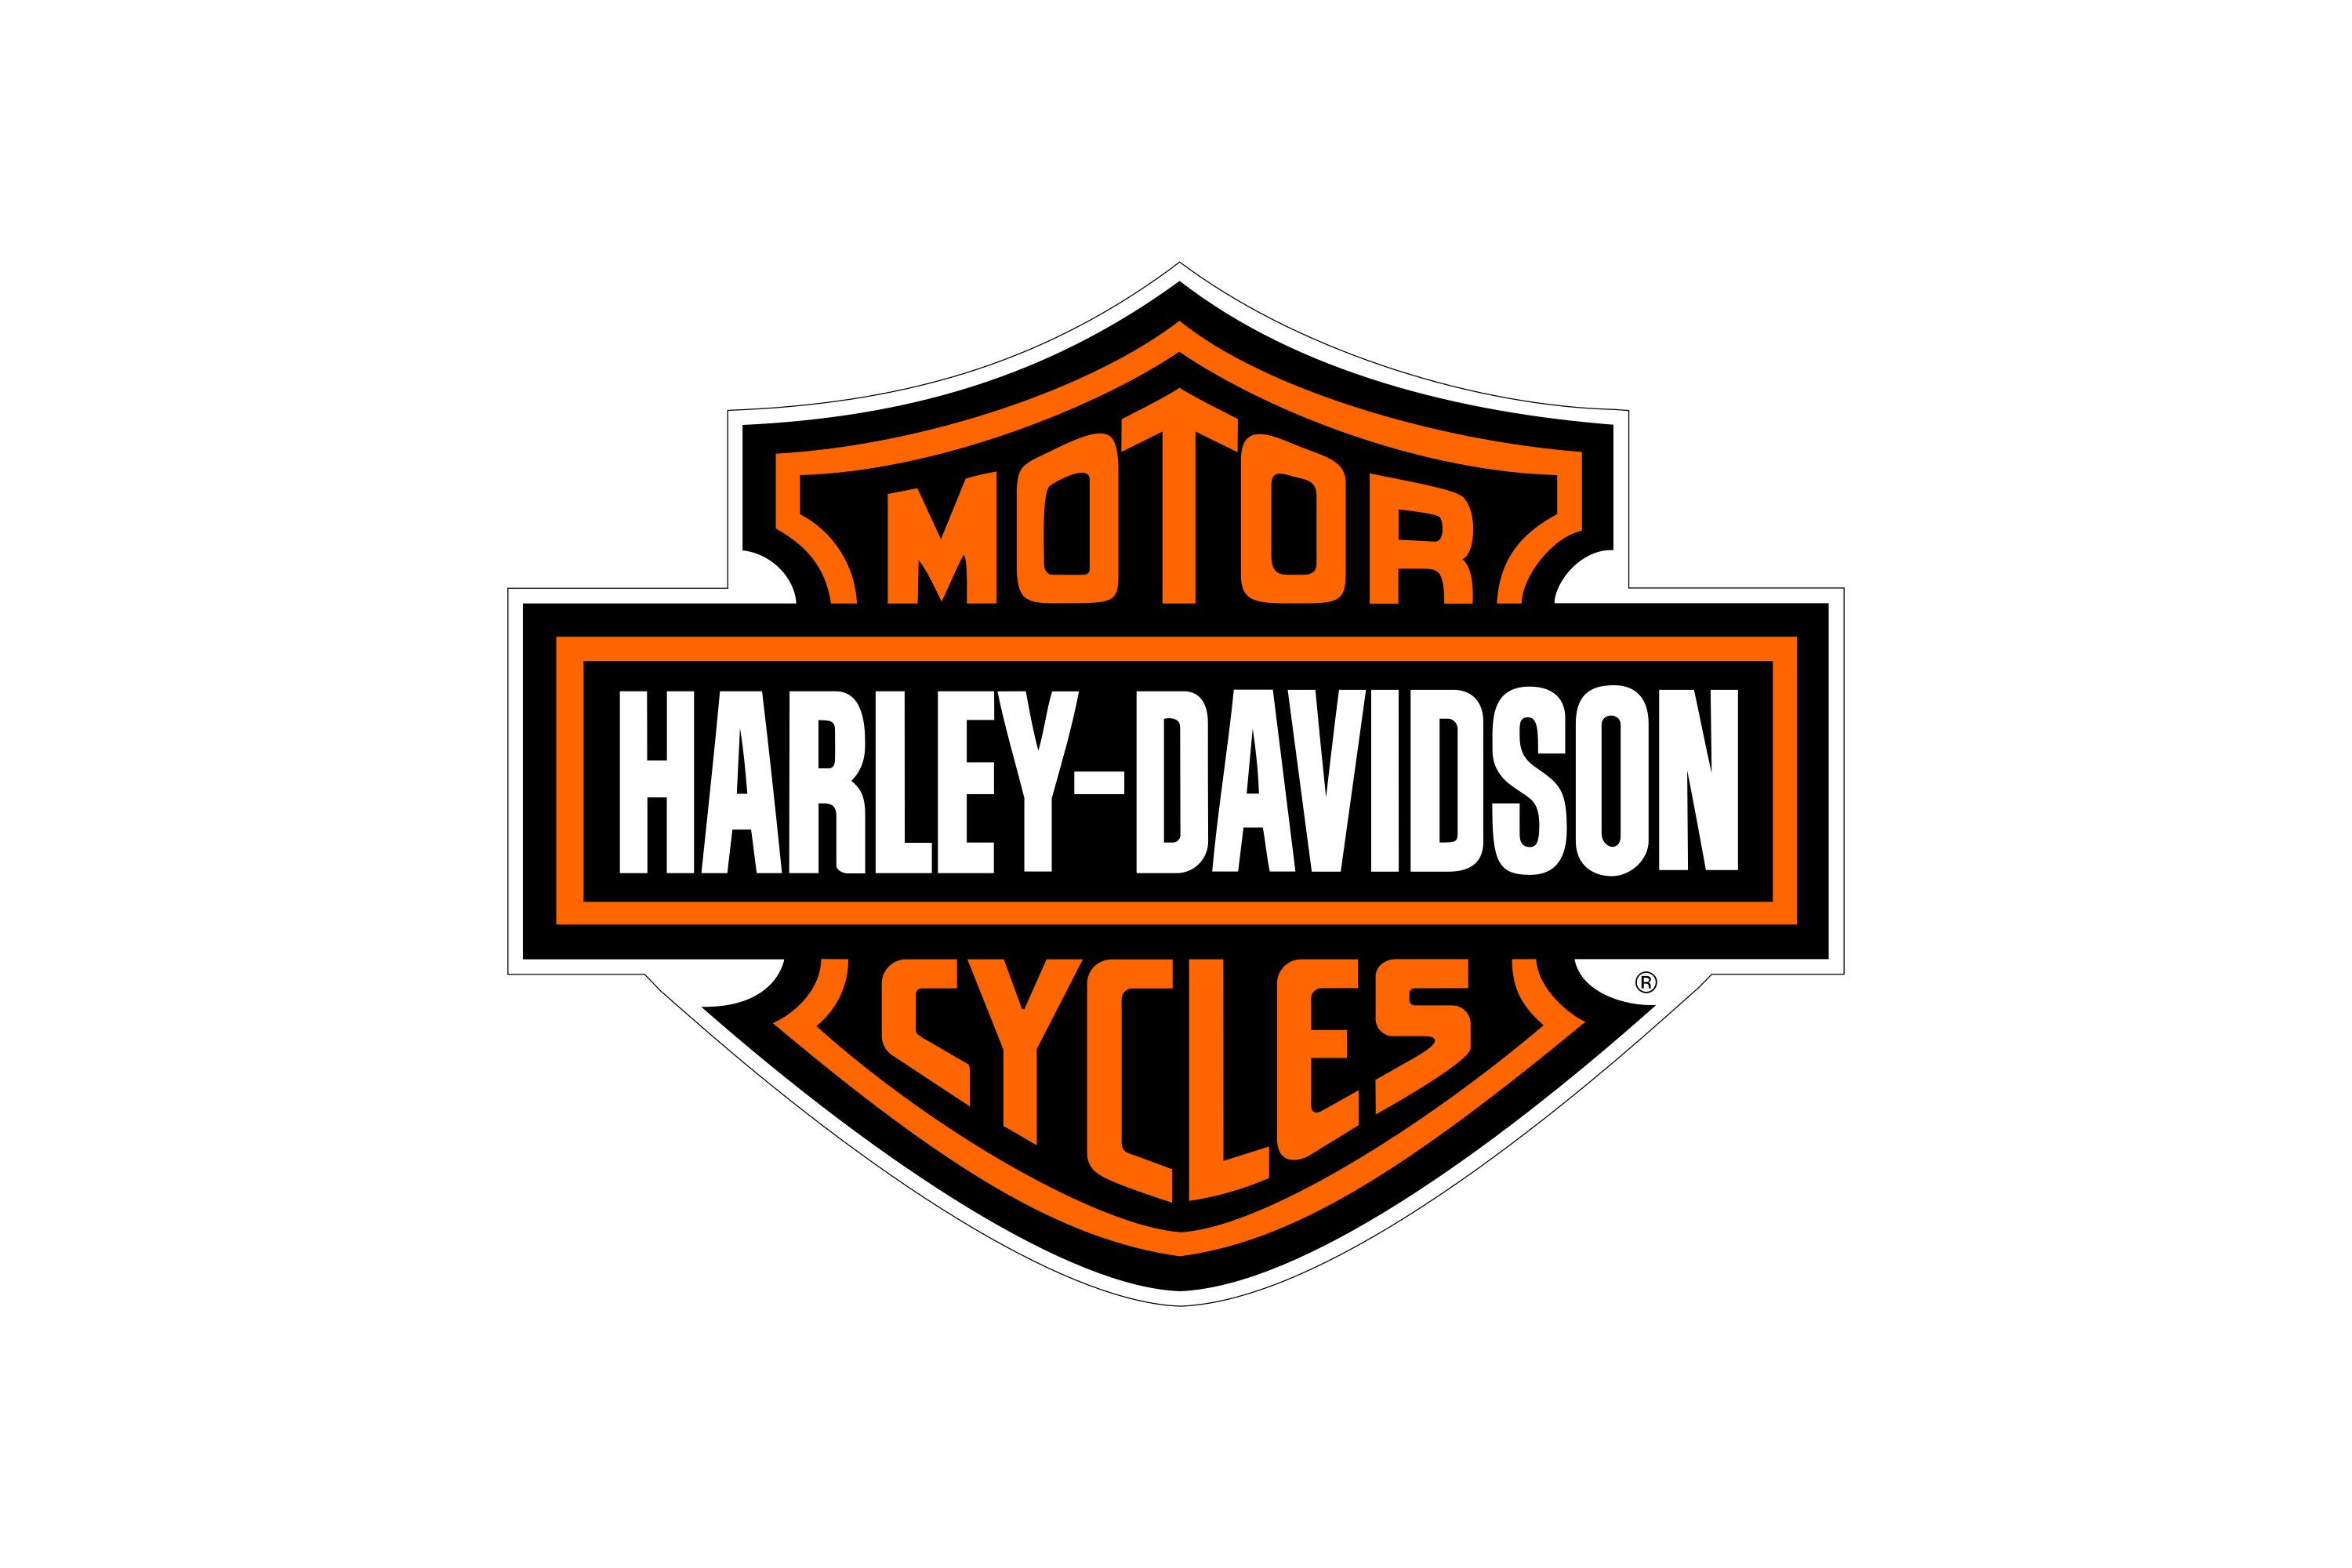 Harley Davidson Darts: Stil und Qualität im Dartsport